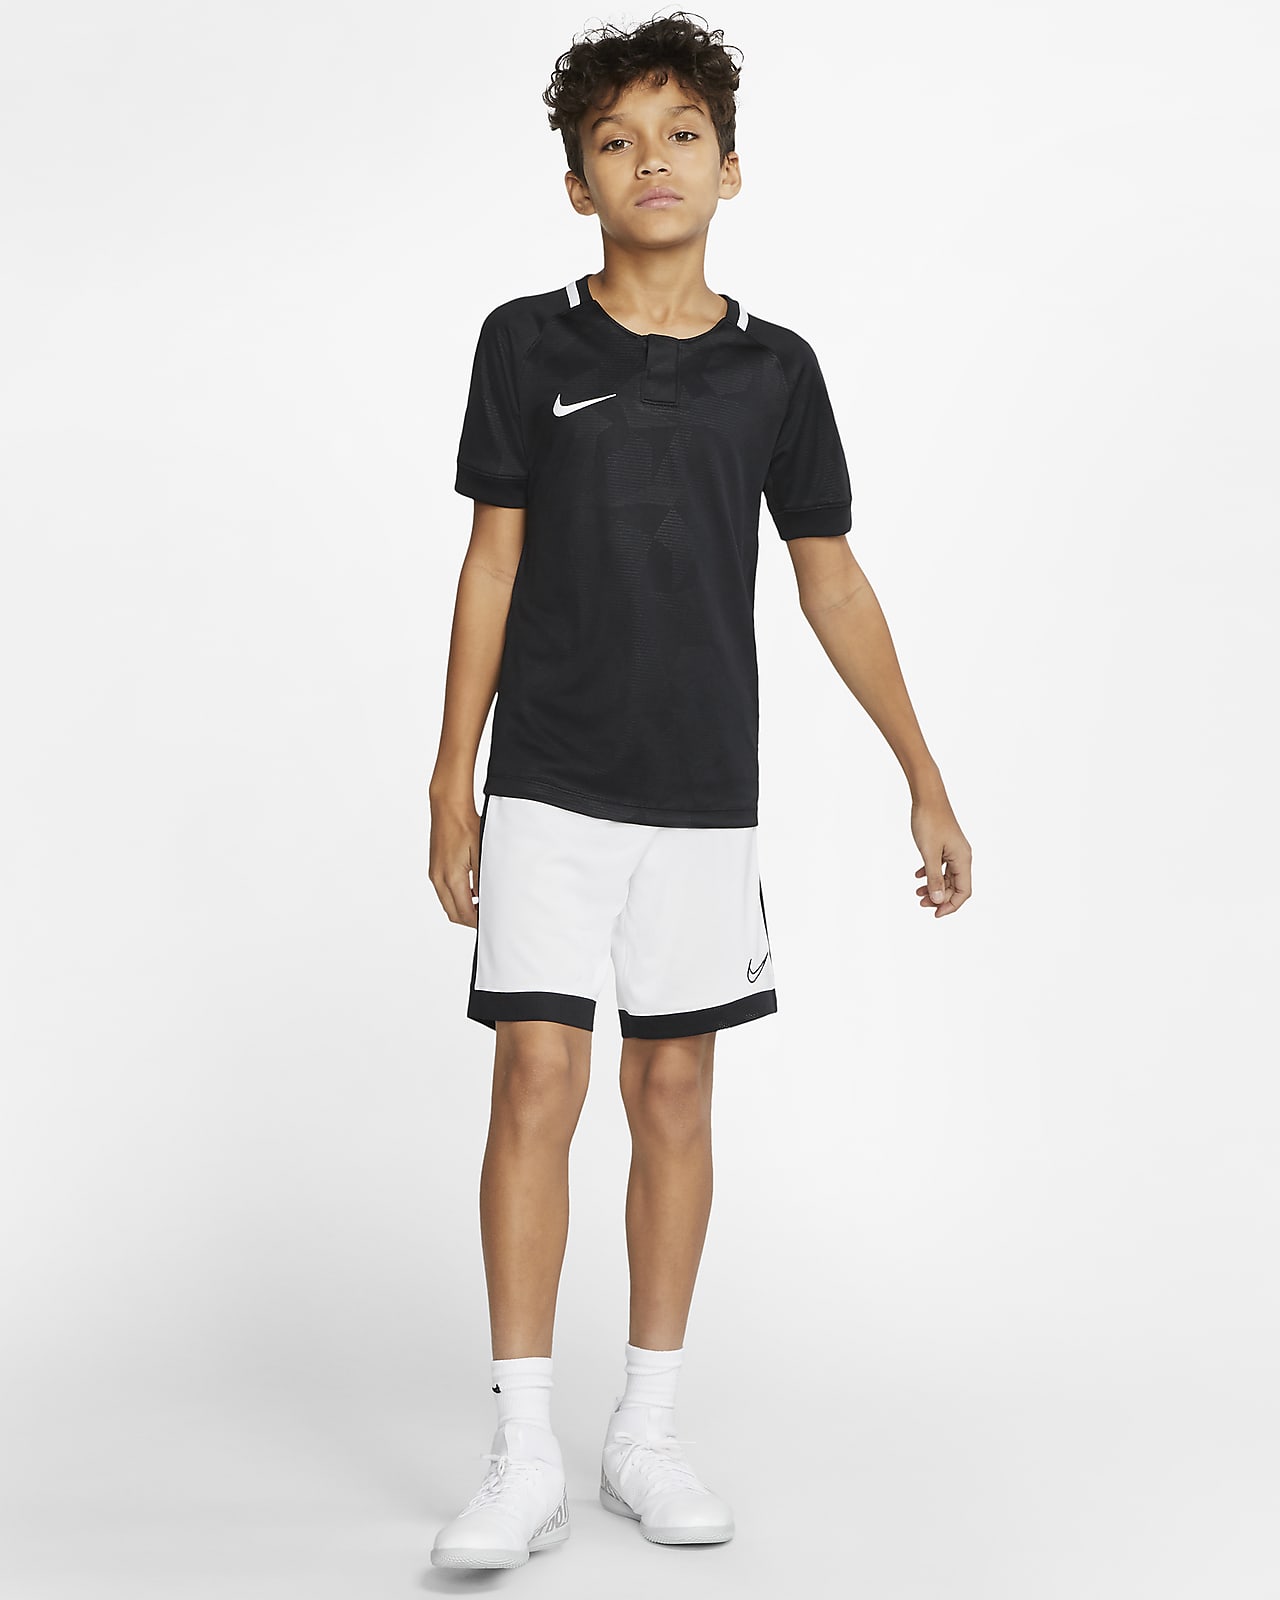 Nike公式 ナイキ Dri Fit アカデミー ジュニア サッカーショートパンツ オンラインストア 通販サイト